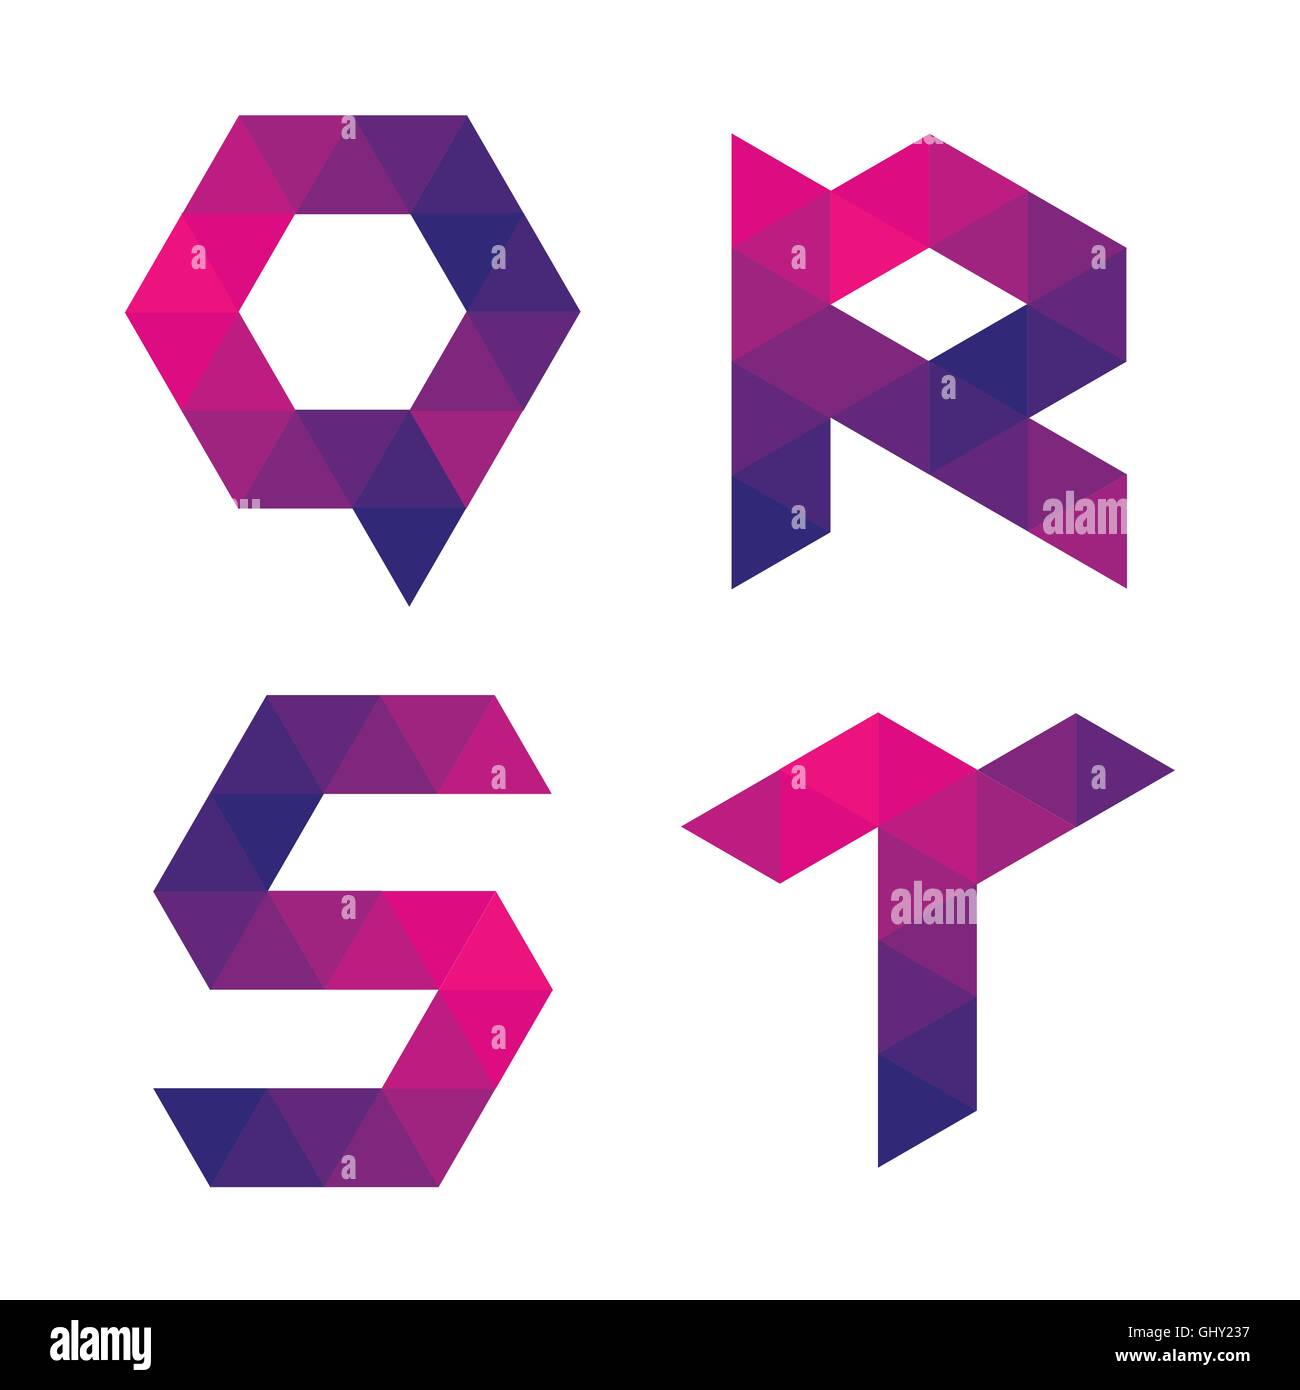 Serie de letras q, r, s, t formado por triángulos de colores. Forma geométrica. Fondo blanco. Aislados. Ilustración del Vector